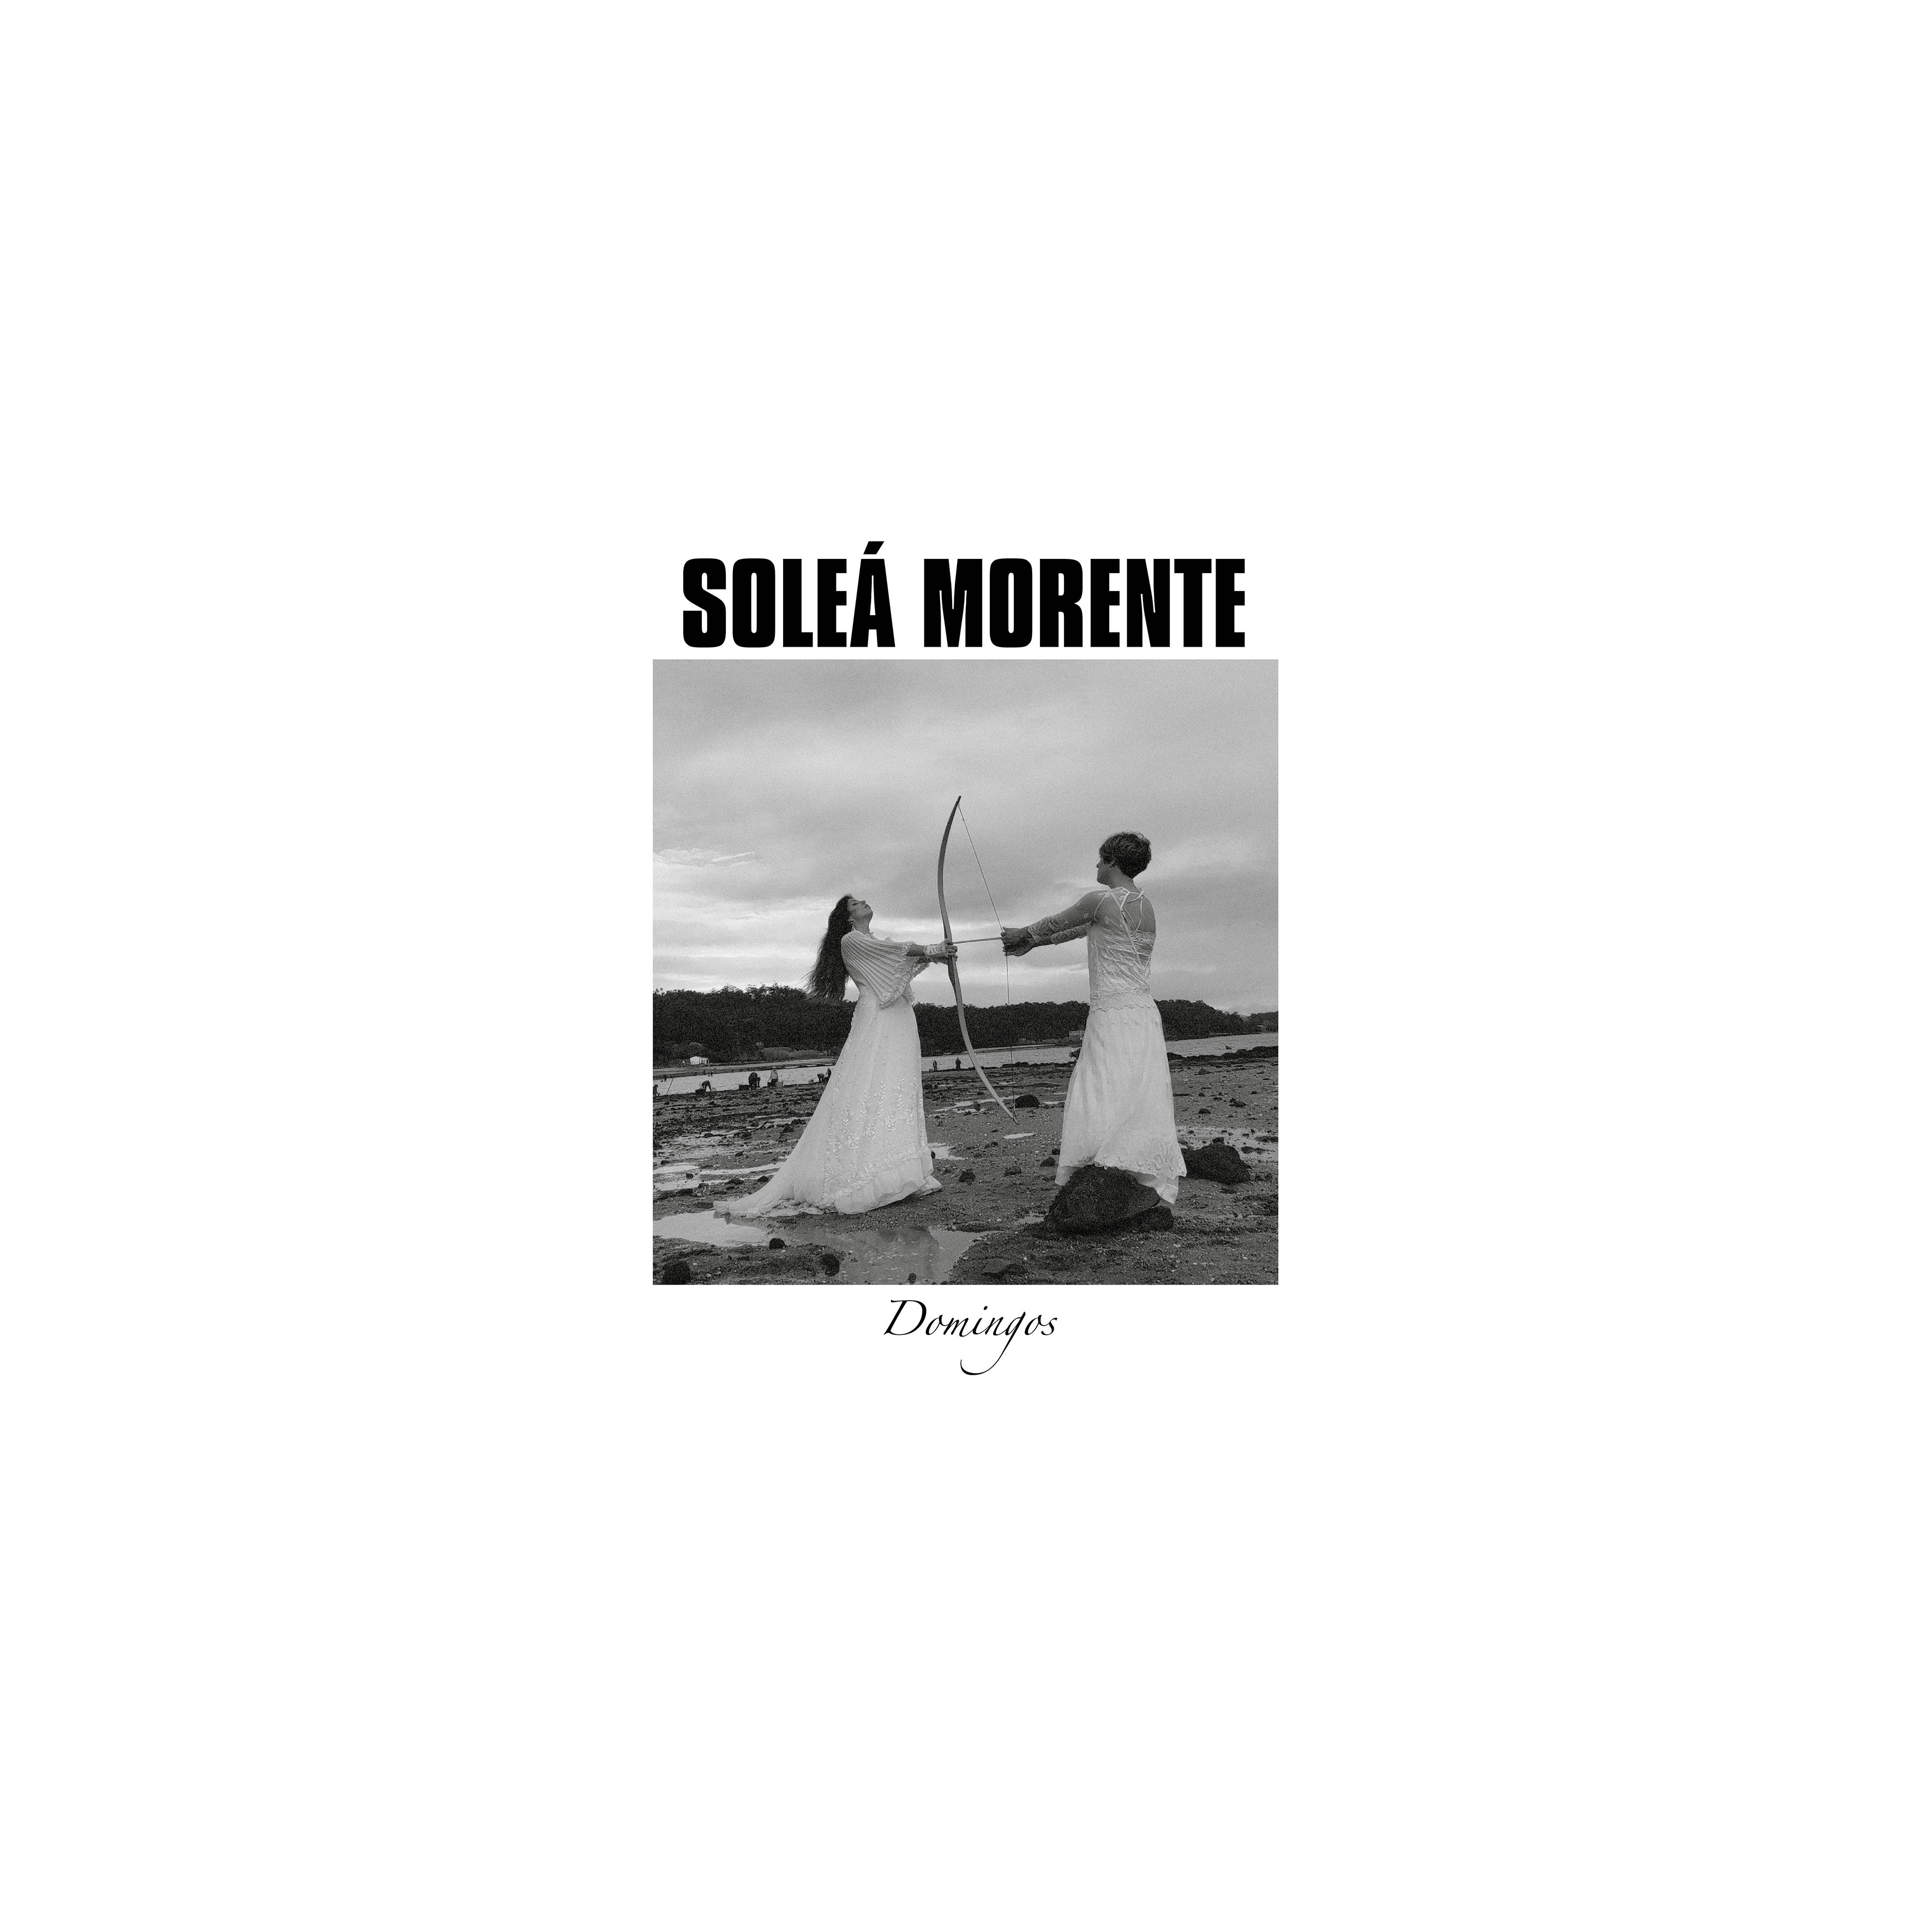 SOLEÁ MORENTE (feat. Isa Cea) “Domingos” Single y Video